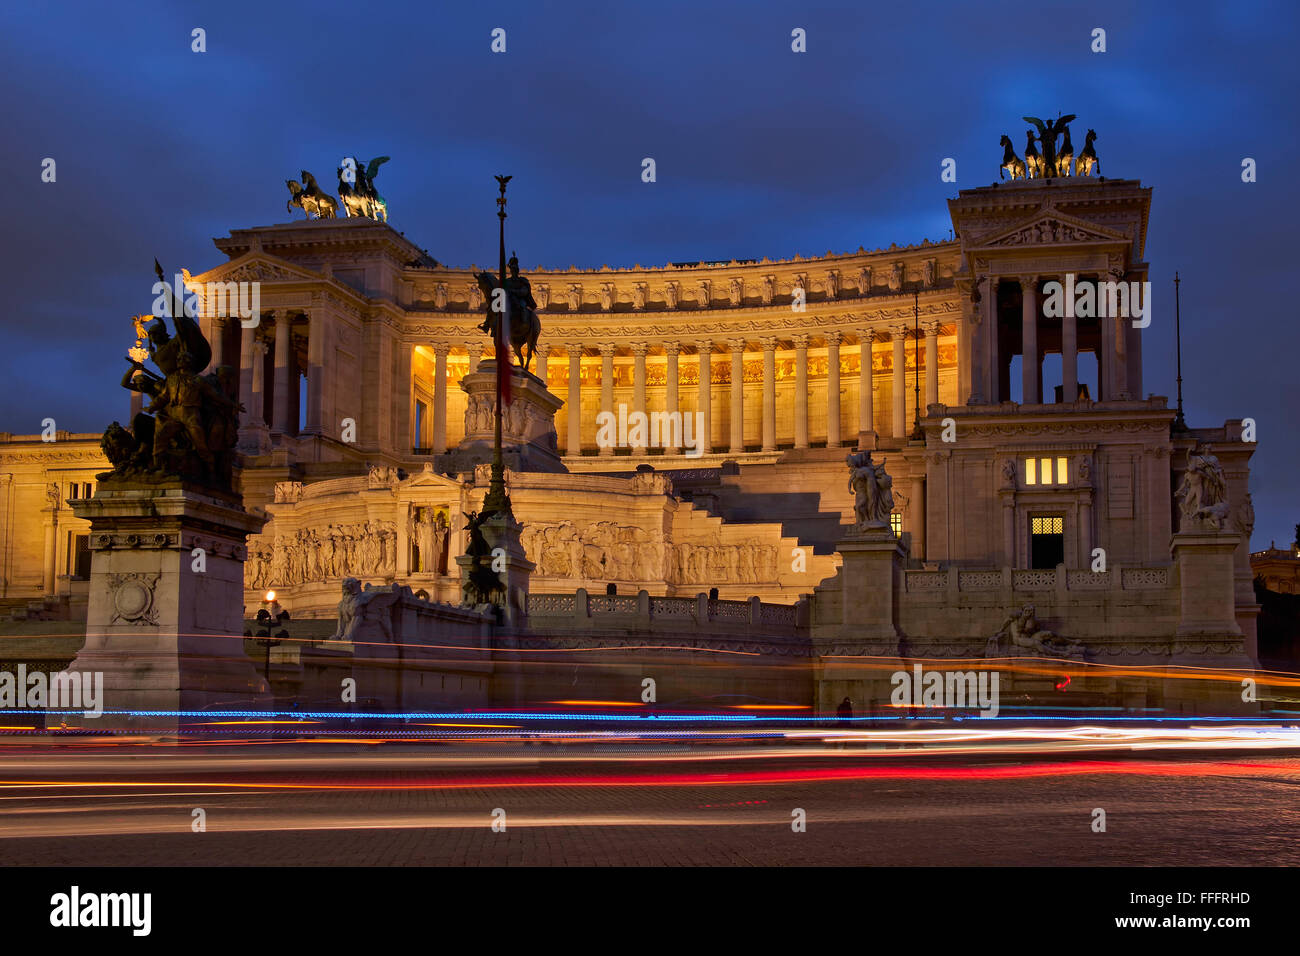 Italy, Lazio, Rome, Venezia Square, view of the Vittoriano building at twilight Stock Photo